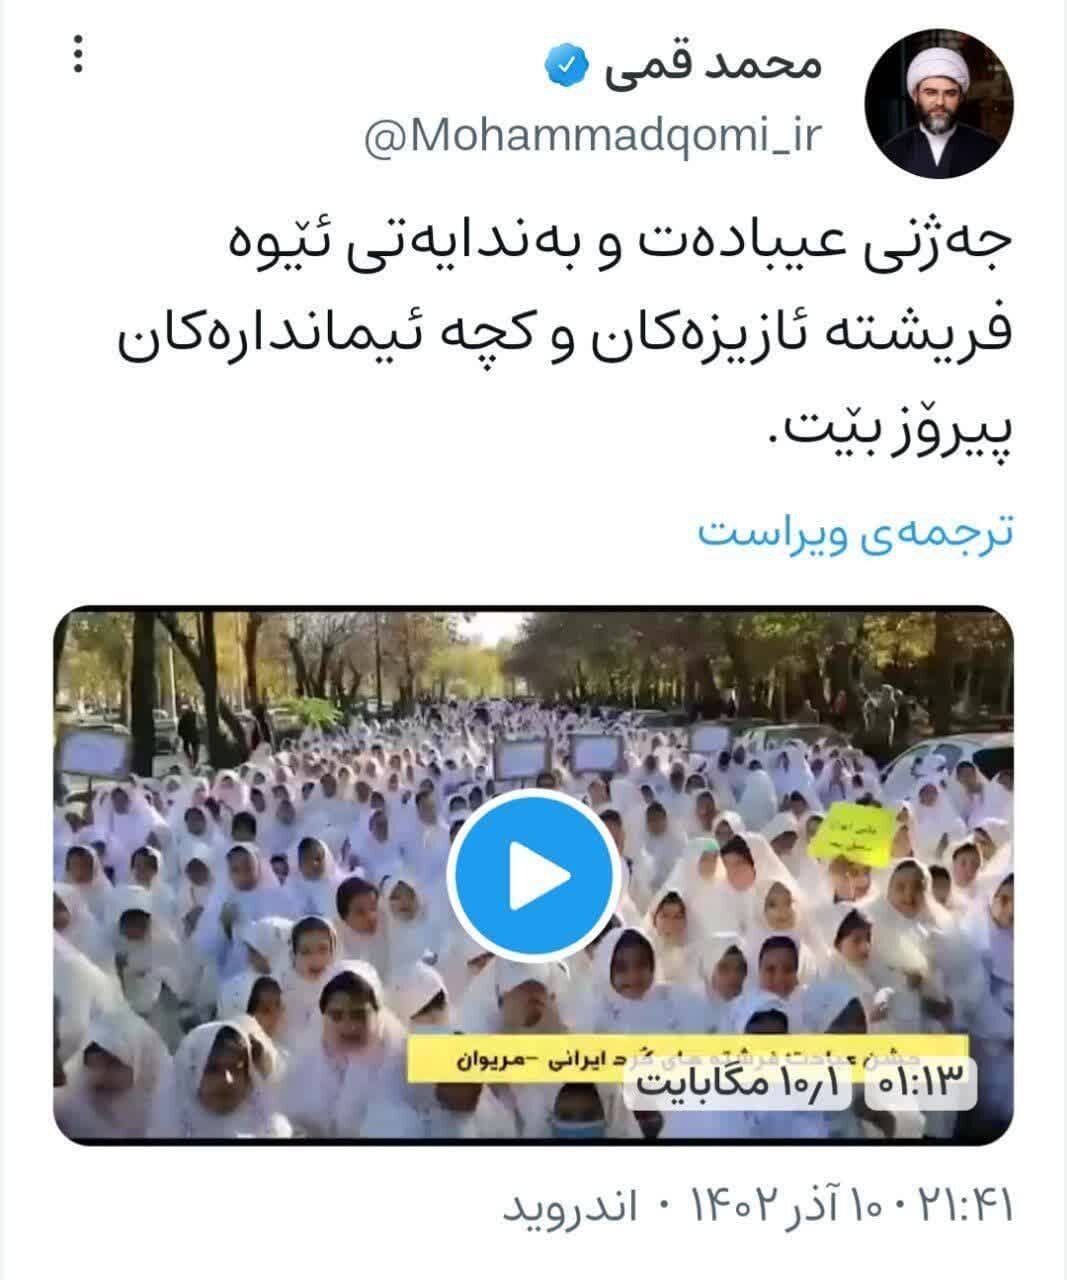 پیام تبریک رییس سازمان تبلیغات اسلامی به فرشتگان مریوانی